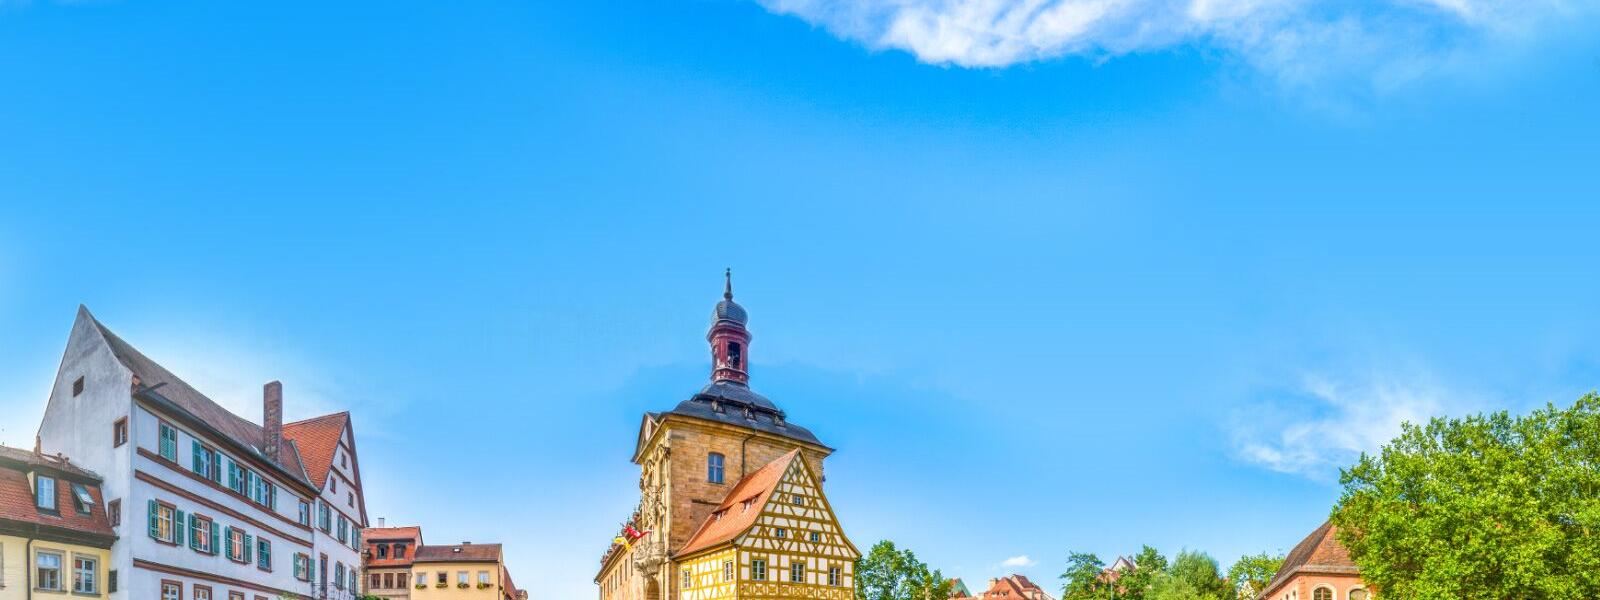 Altes Rathaus in Bamberg, mit Oberer und Unterer Brücke über die Regnitz